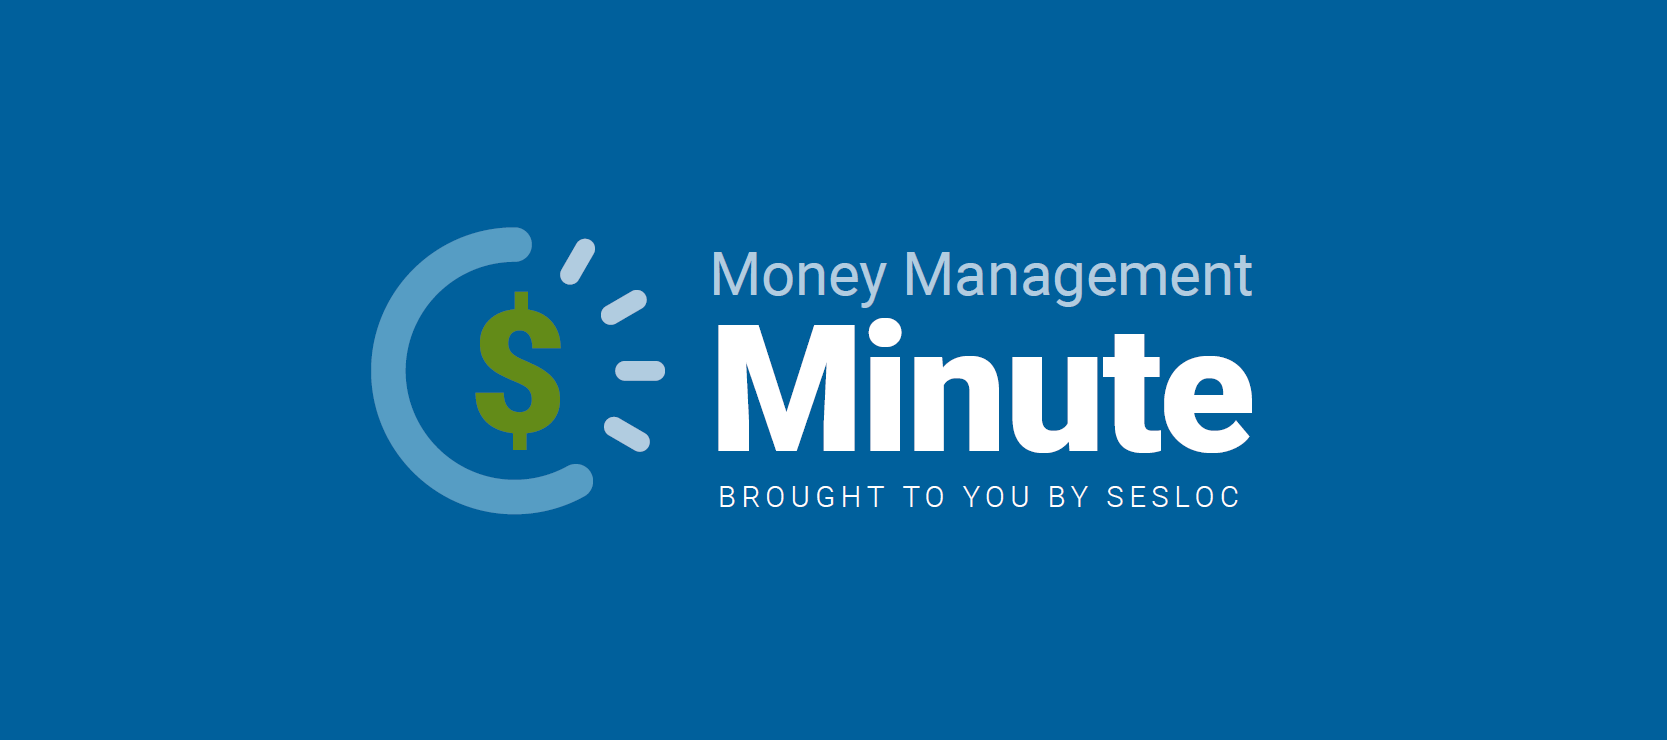 Money Management Minute